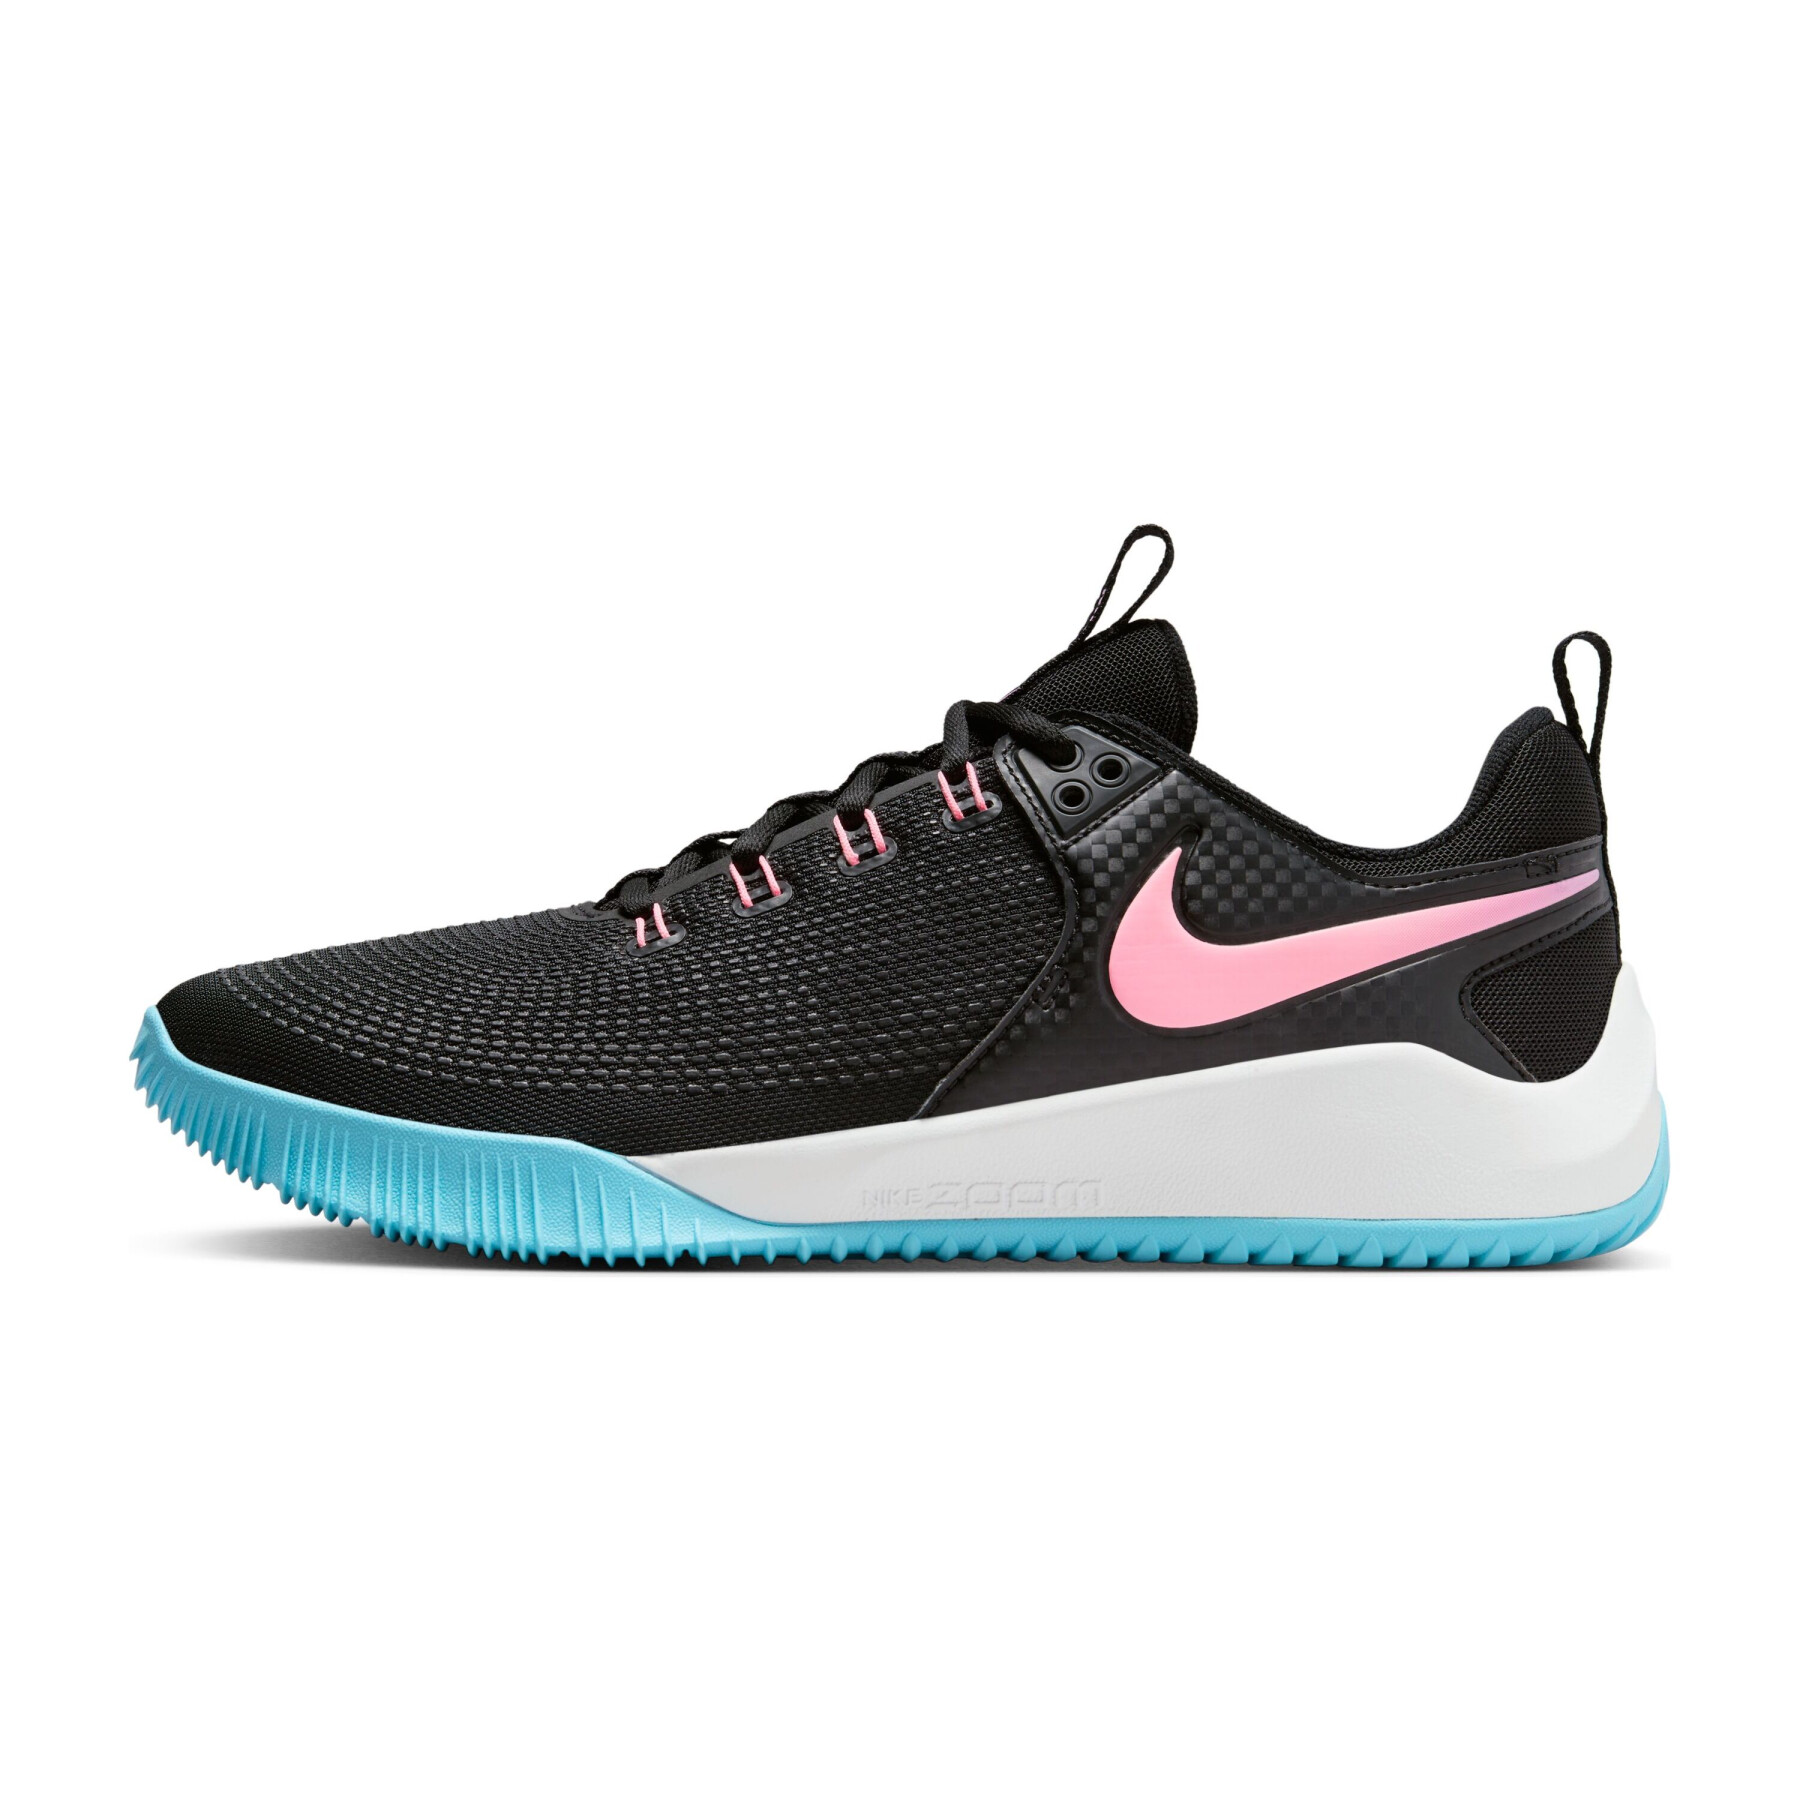 Skor Nike Air Zoom Hyperace 2 SE